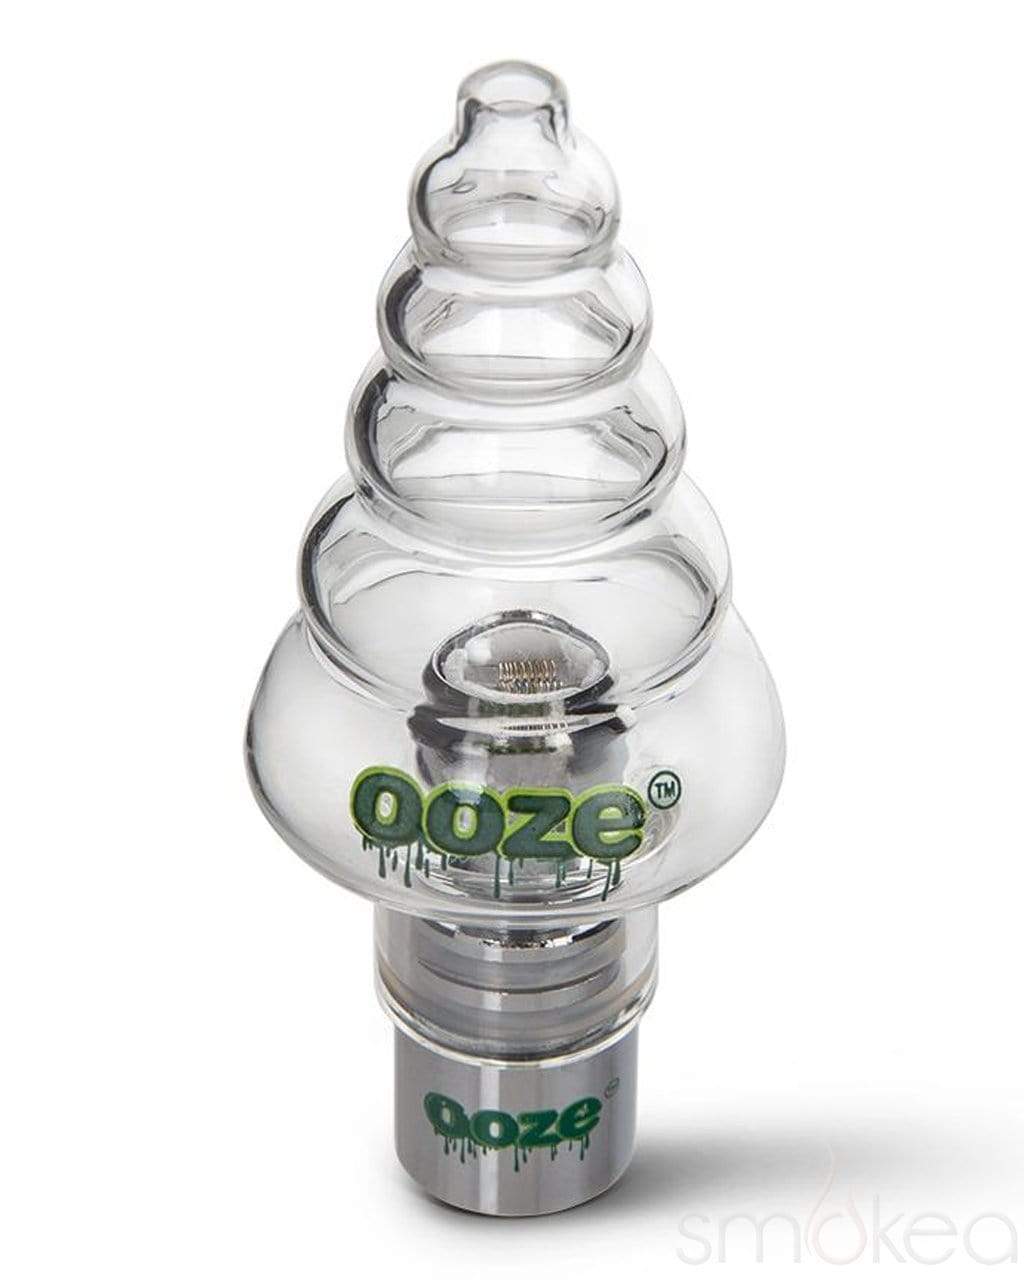 Ooze Non-Stick Silicone Dabber - Silver